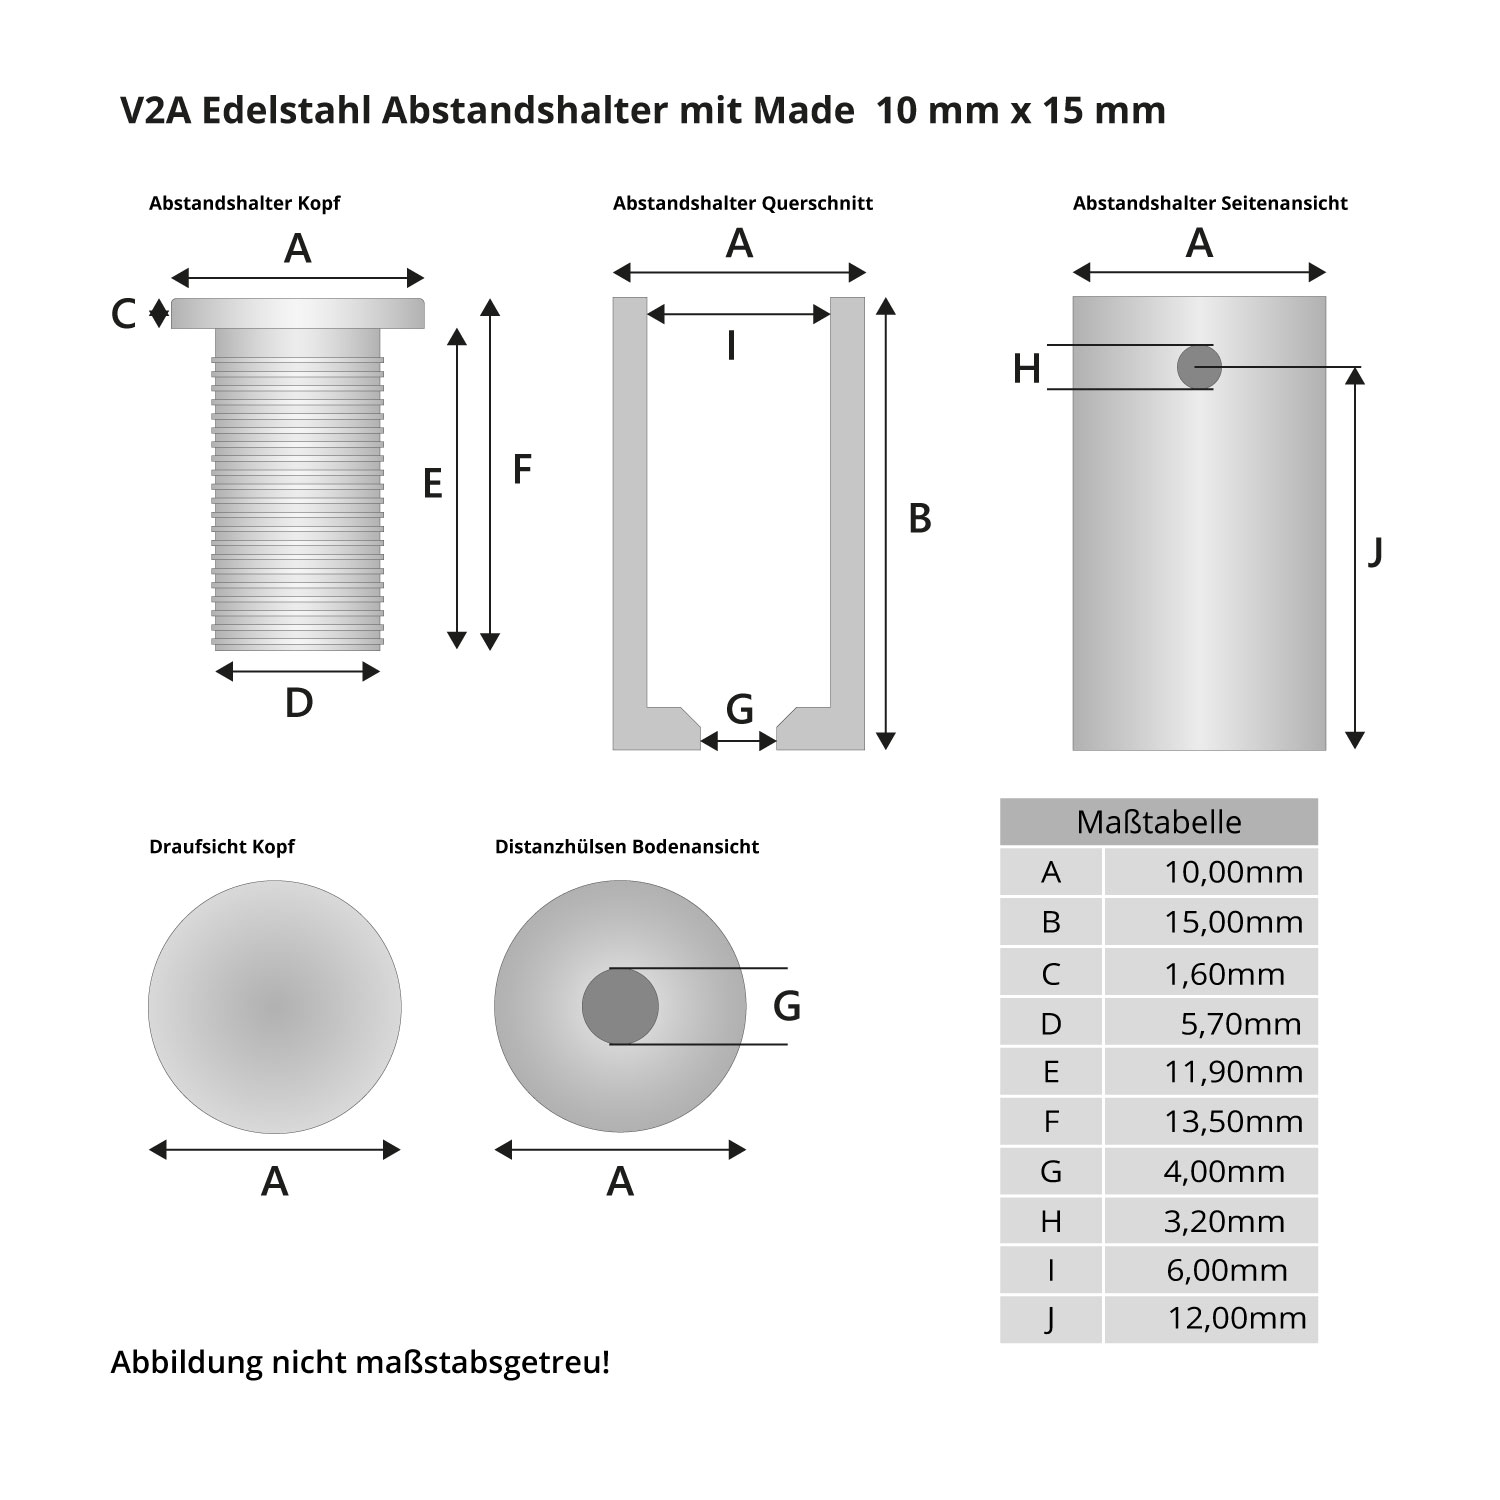 V2A Edelstahl Abstandshalter 10 mm x 15 mm